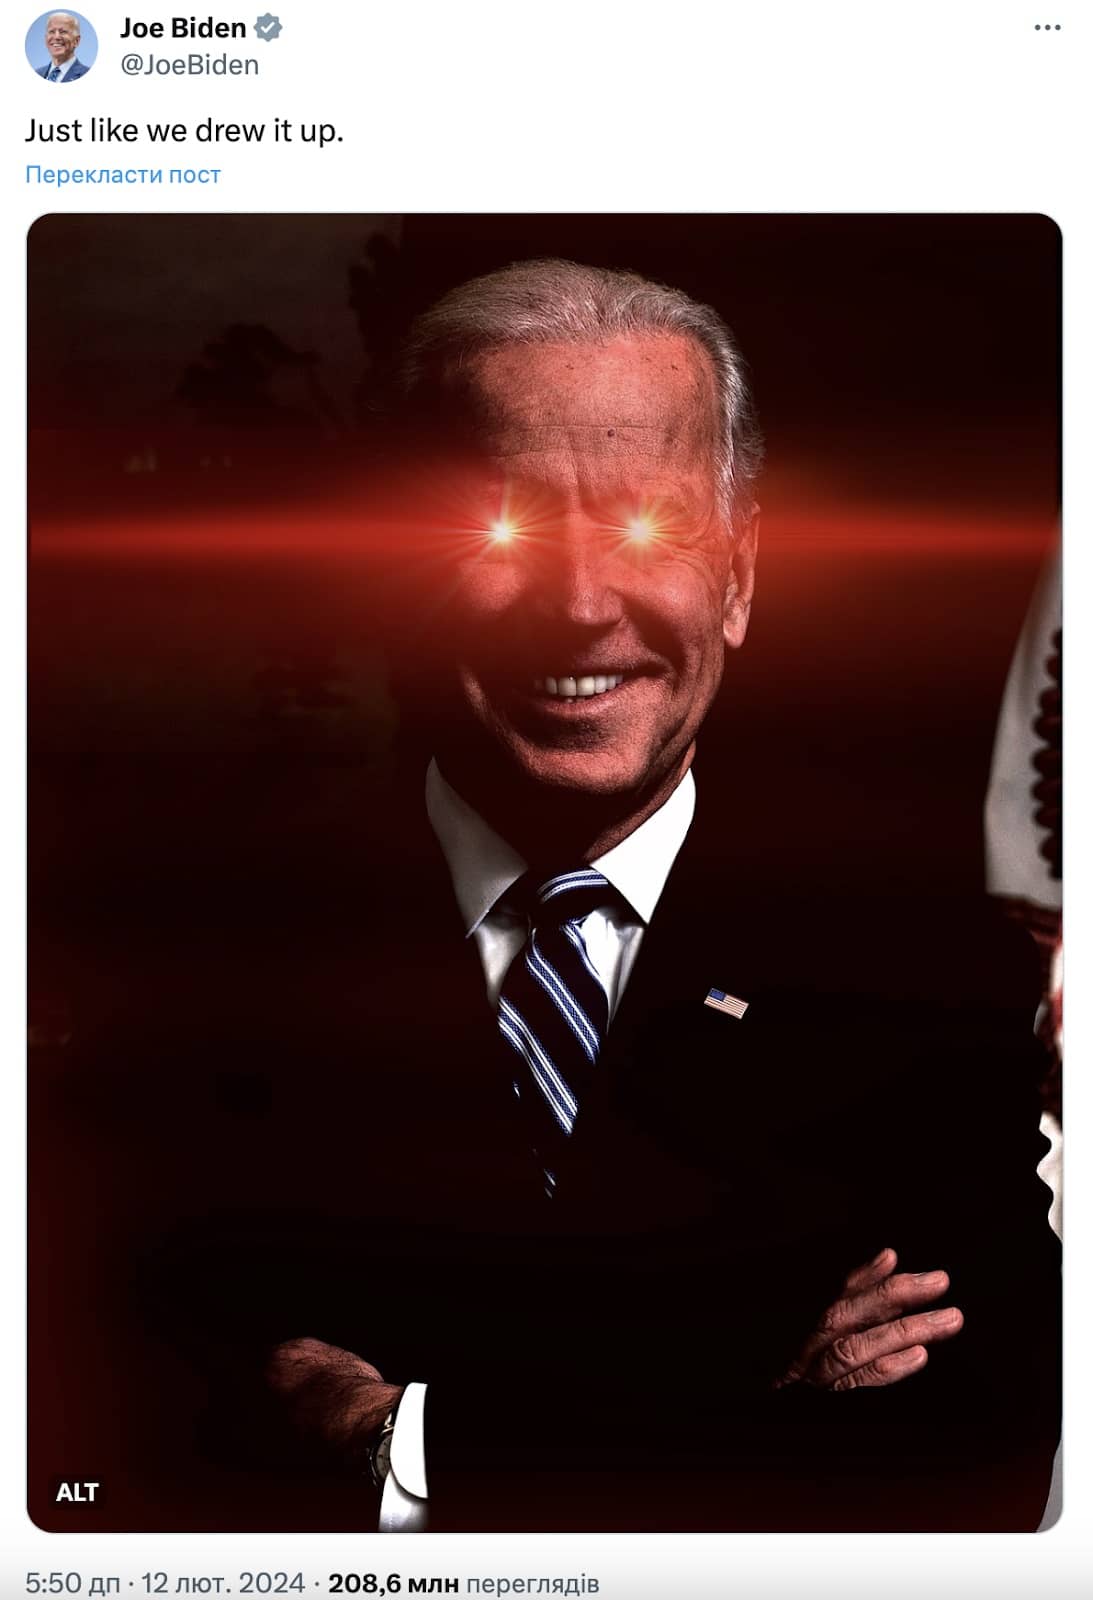 Biden's laser eyes